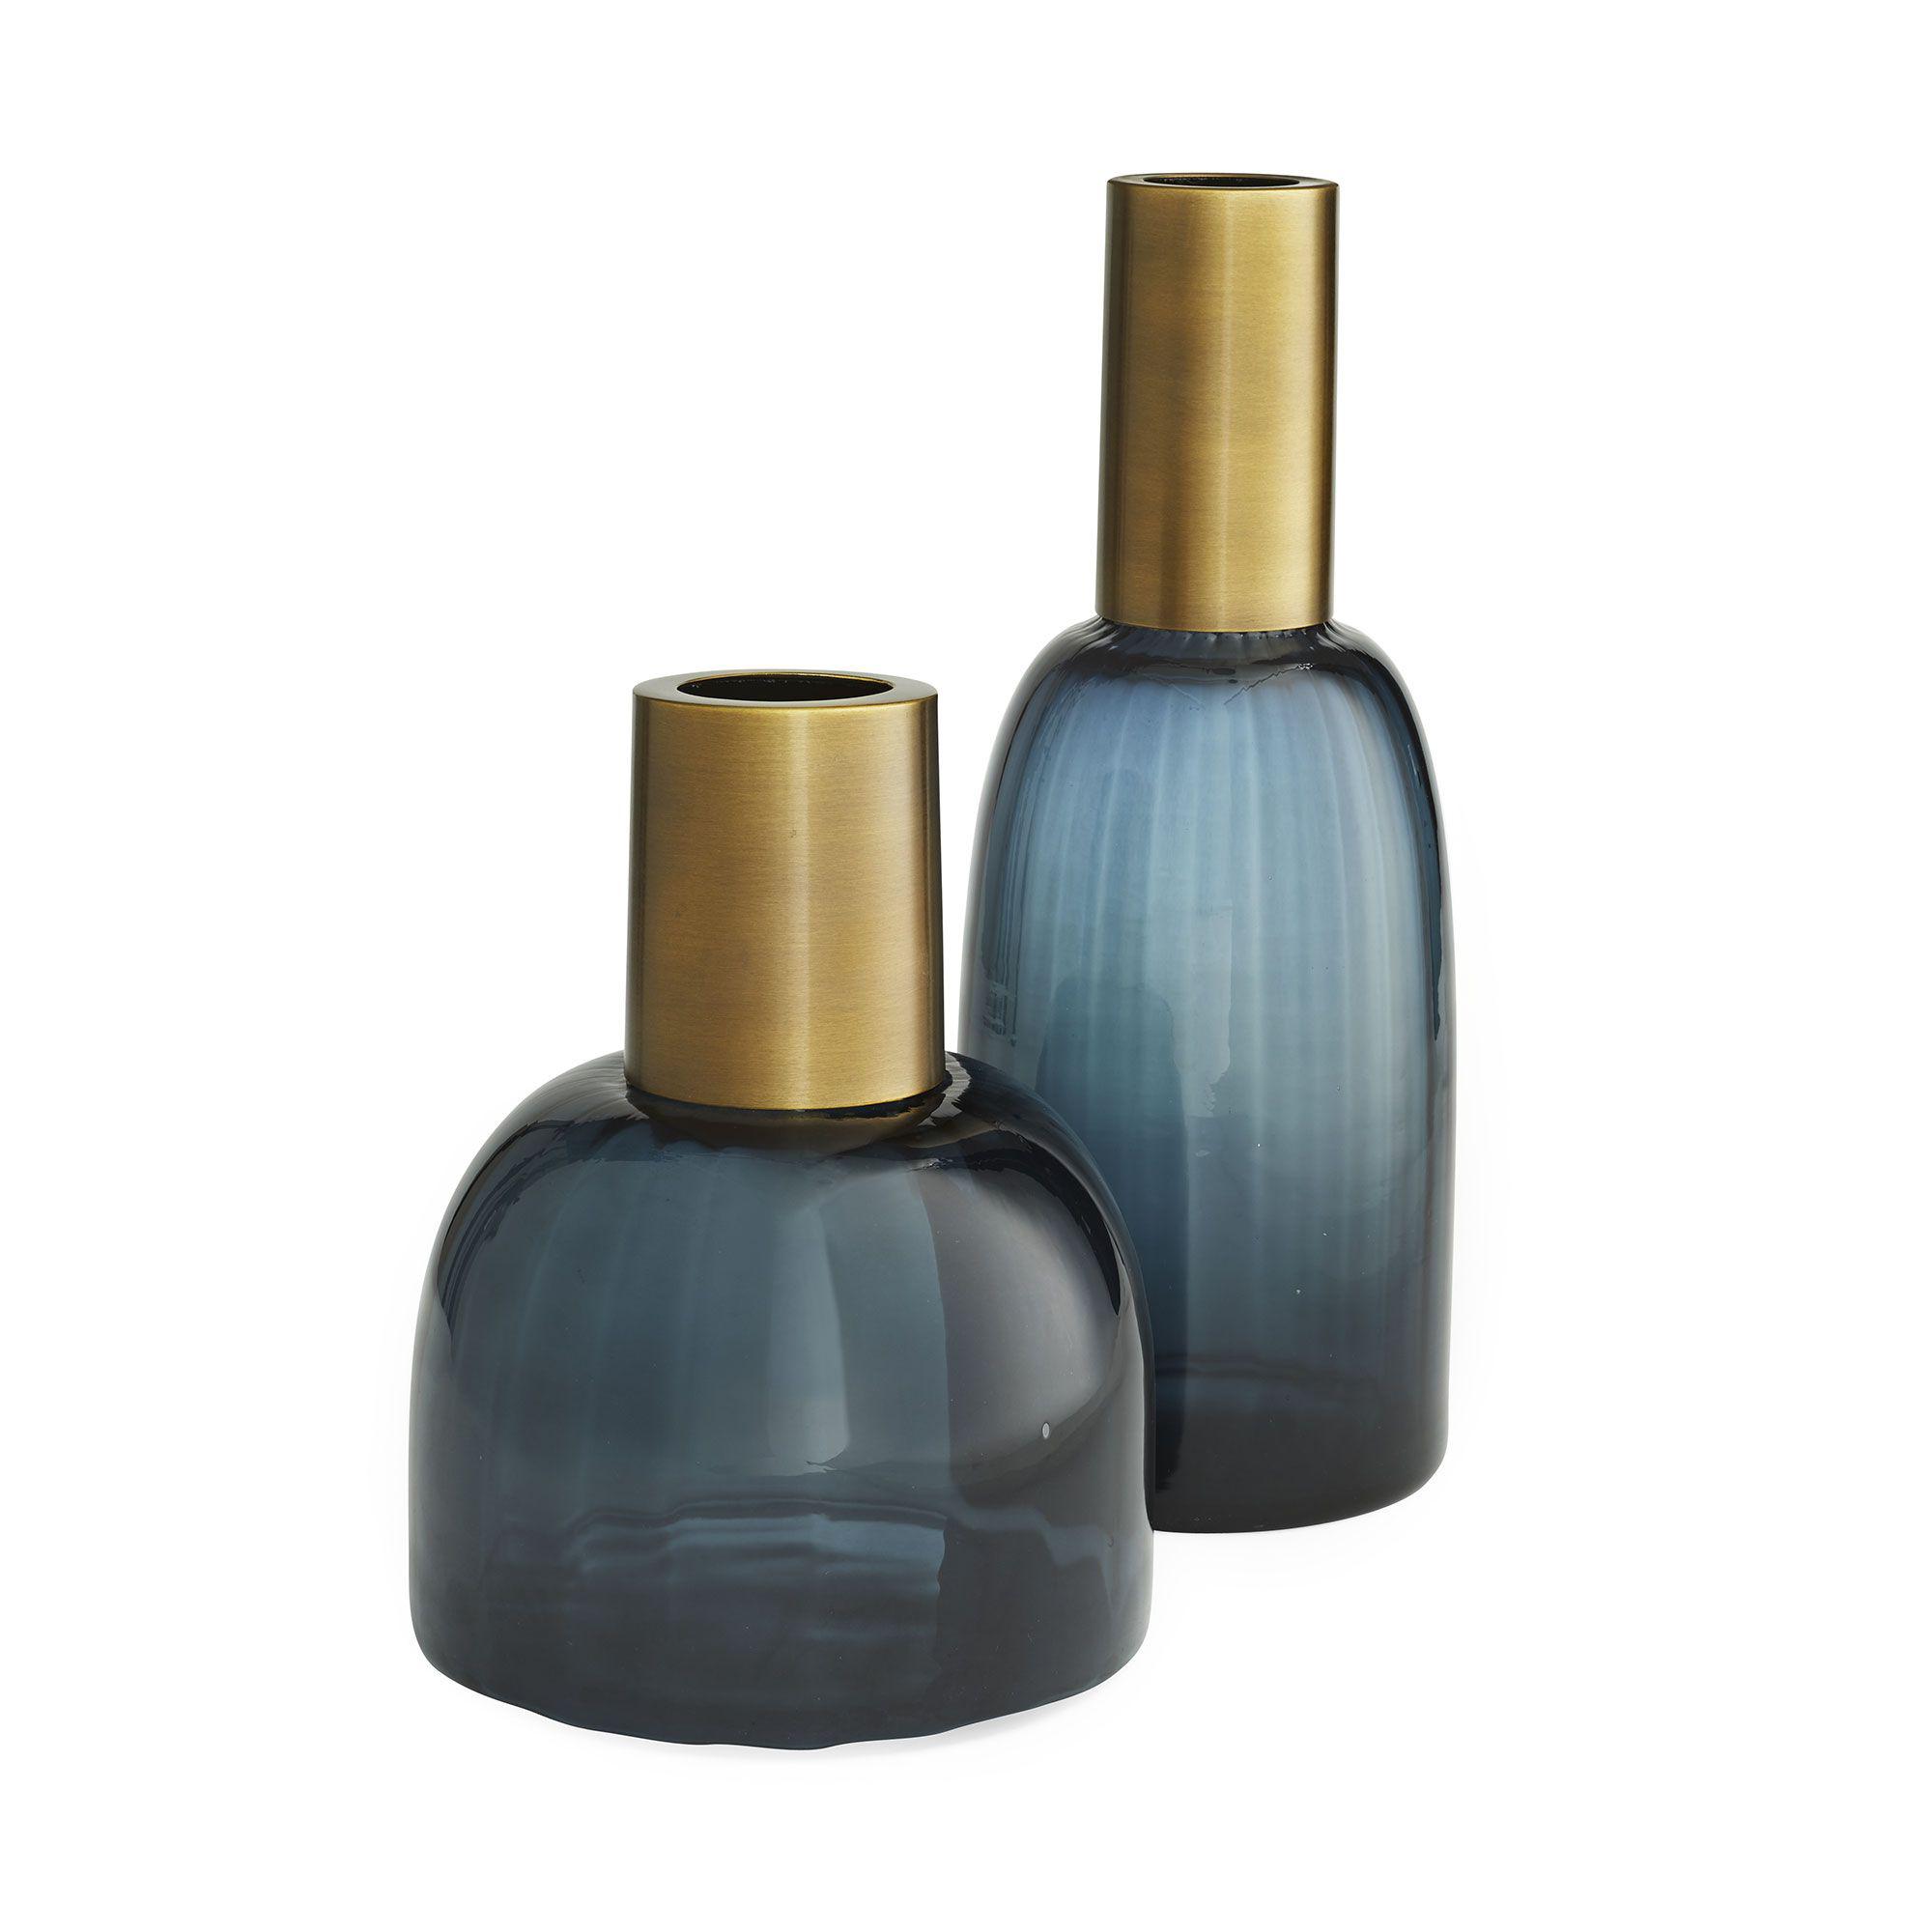 Купить Набор ваз Huff Vases, Set of 2 в интернет-магазине roooms.ru